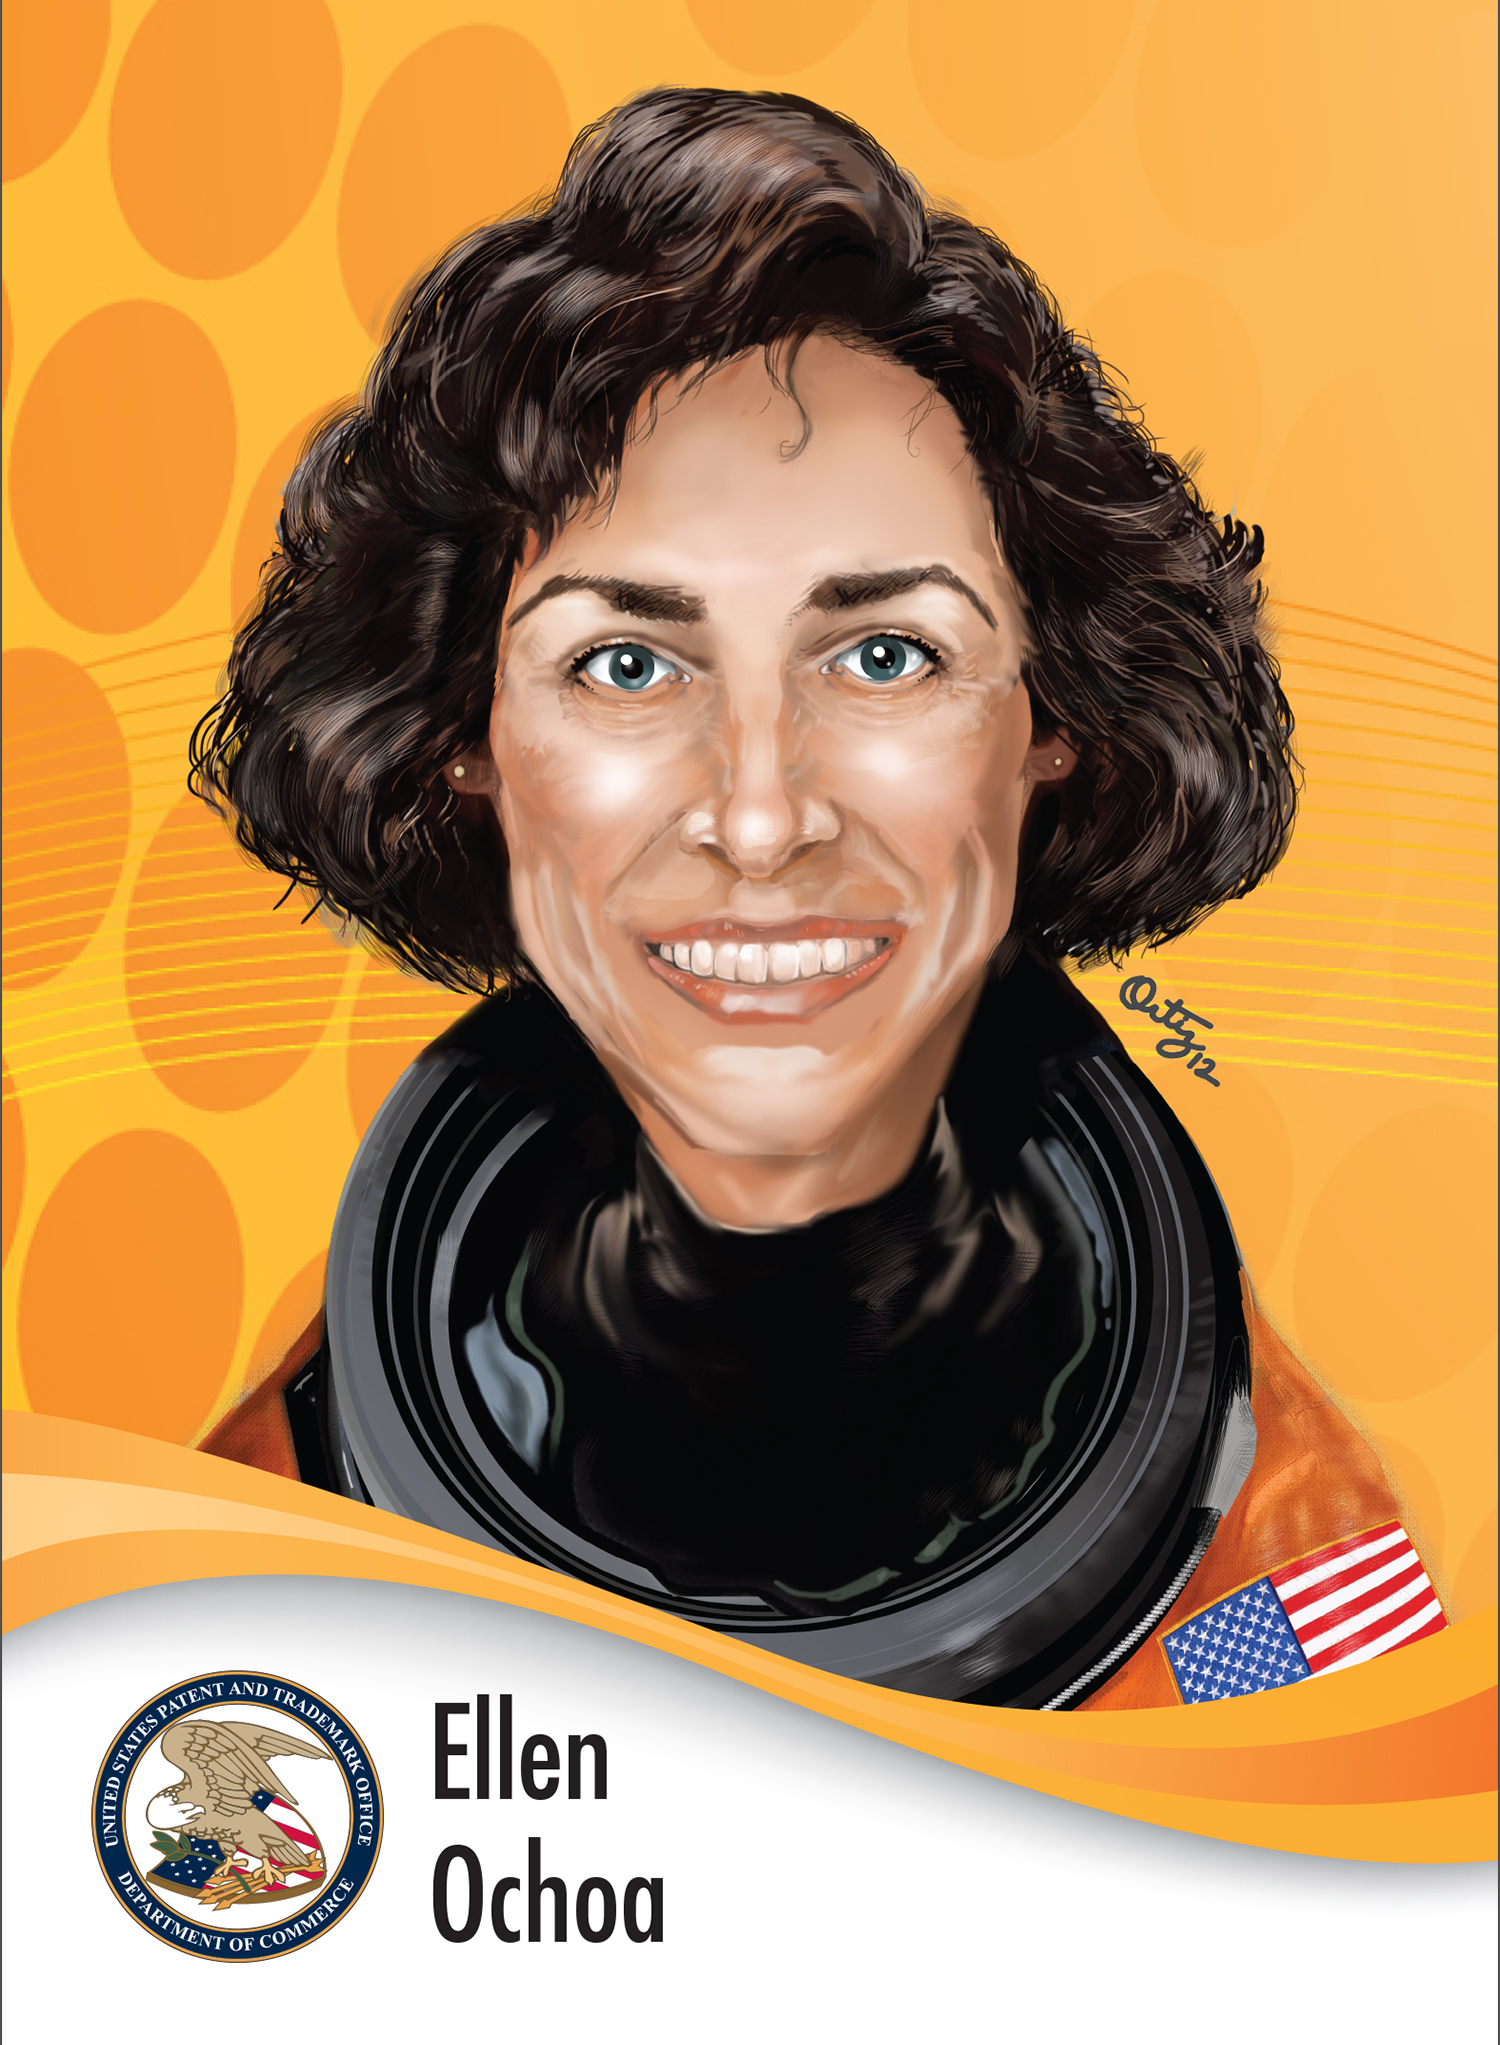 "Ellen Ochoa"